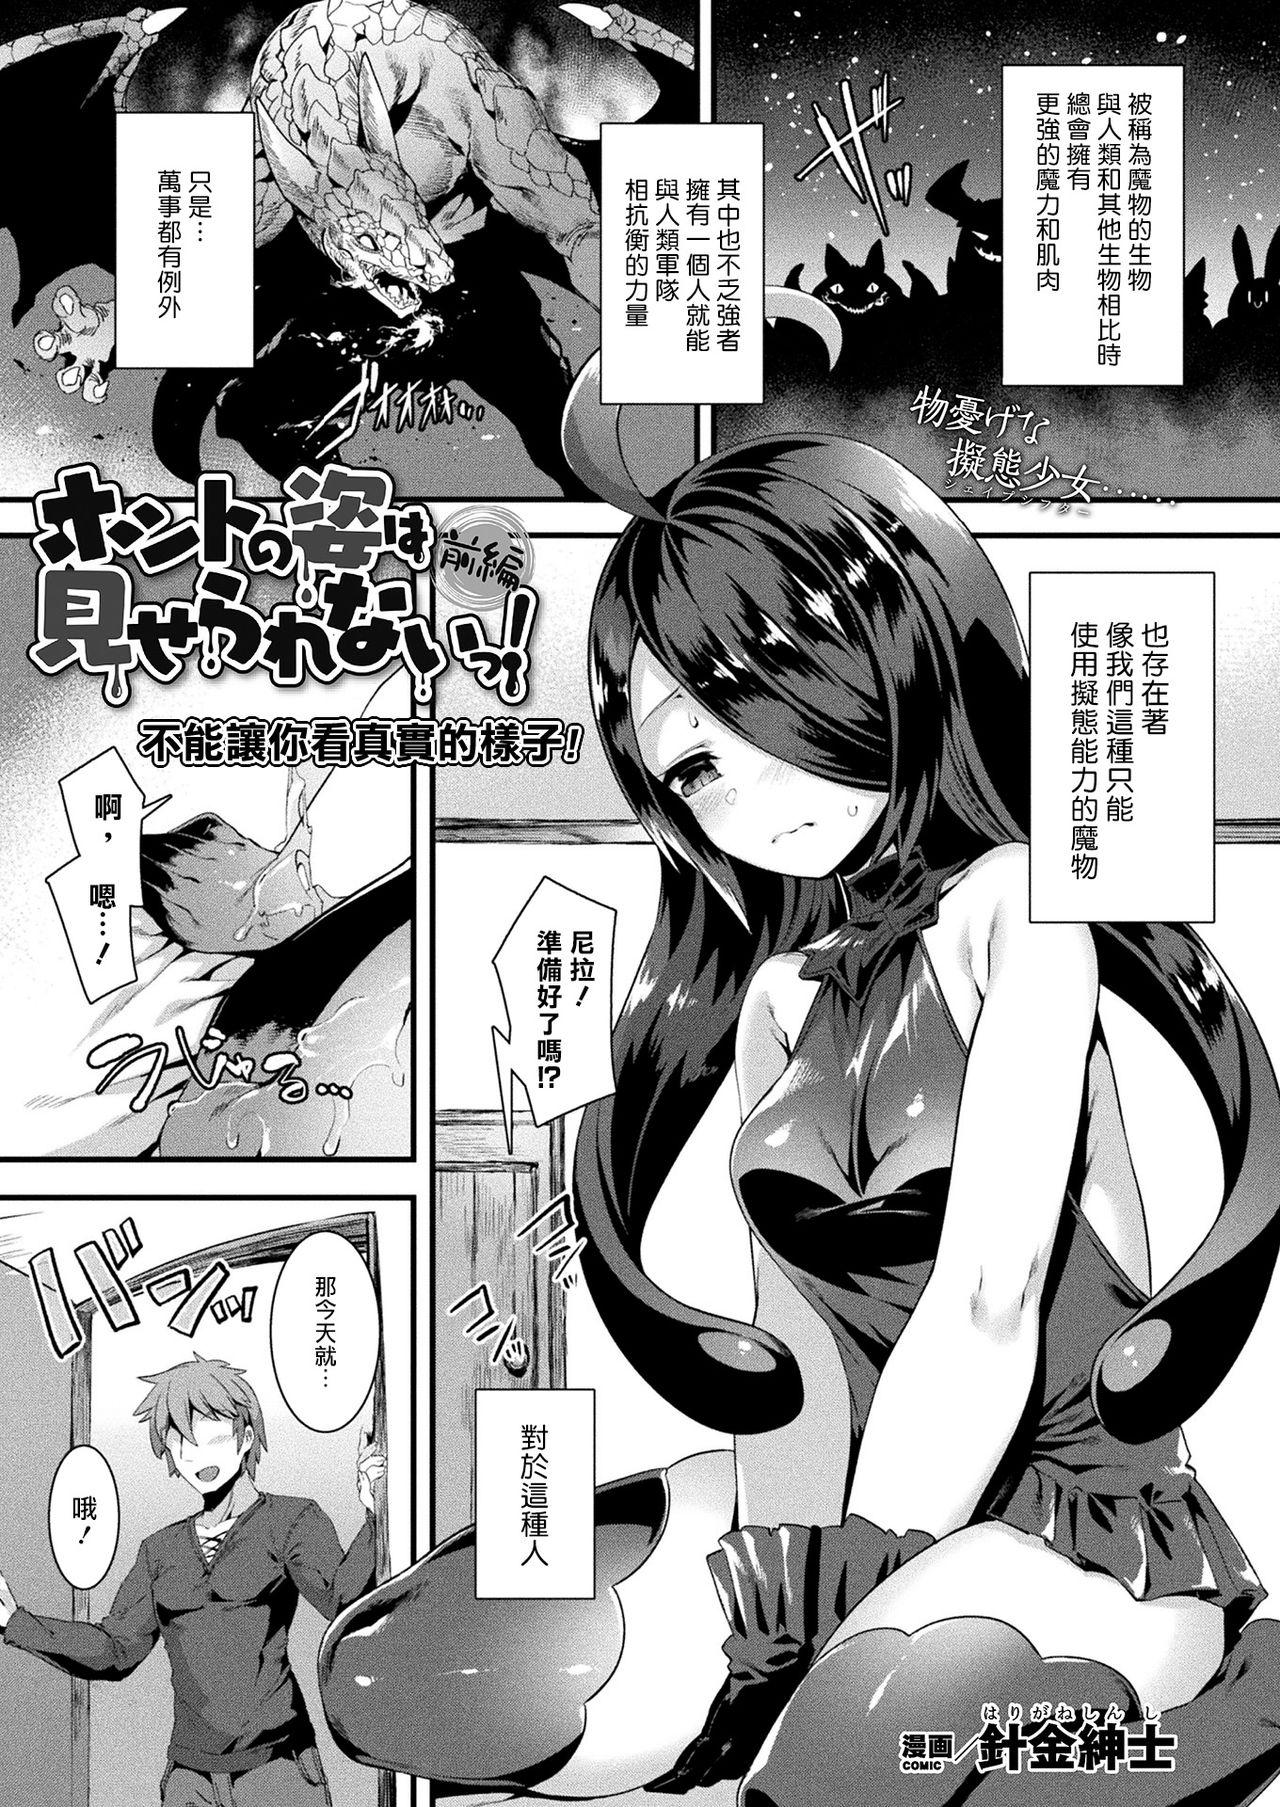 Asians Honto no Sugata wa miserarenai! Zenpen Porn Star - Page 2